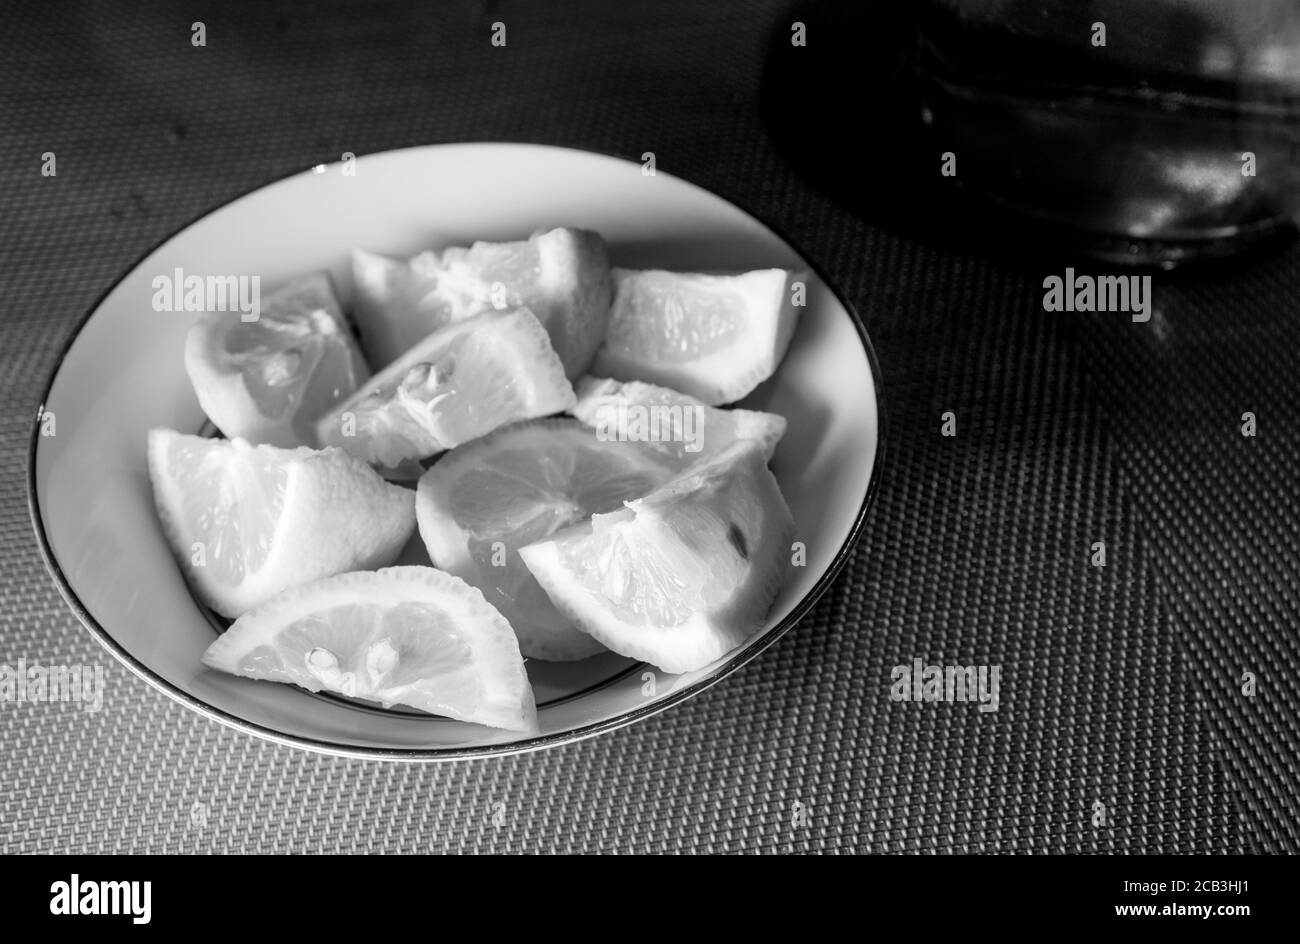 Geschnittene Zitrone in einer Schüssel in schwarz und weiß gestapelt bereit, als Begleitung für eine Mahlzeit serviert werden. Es gibt stimmungsvolle Beleuchtung mit Kontrast. Stockfoto